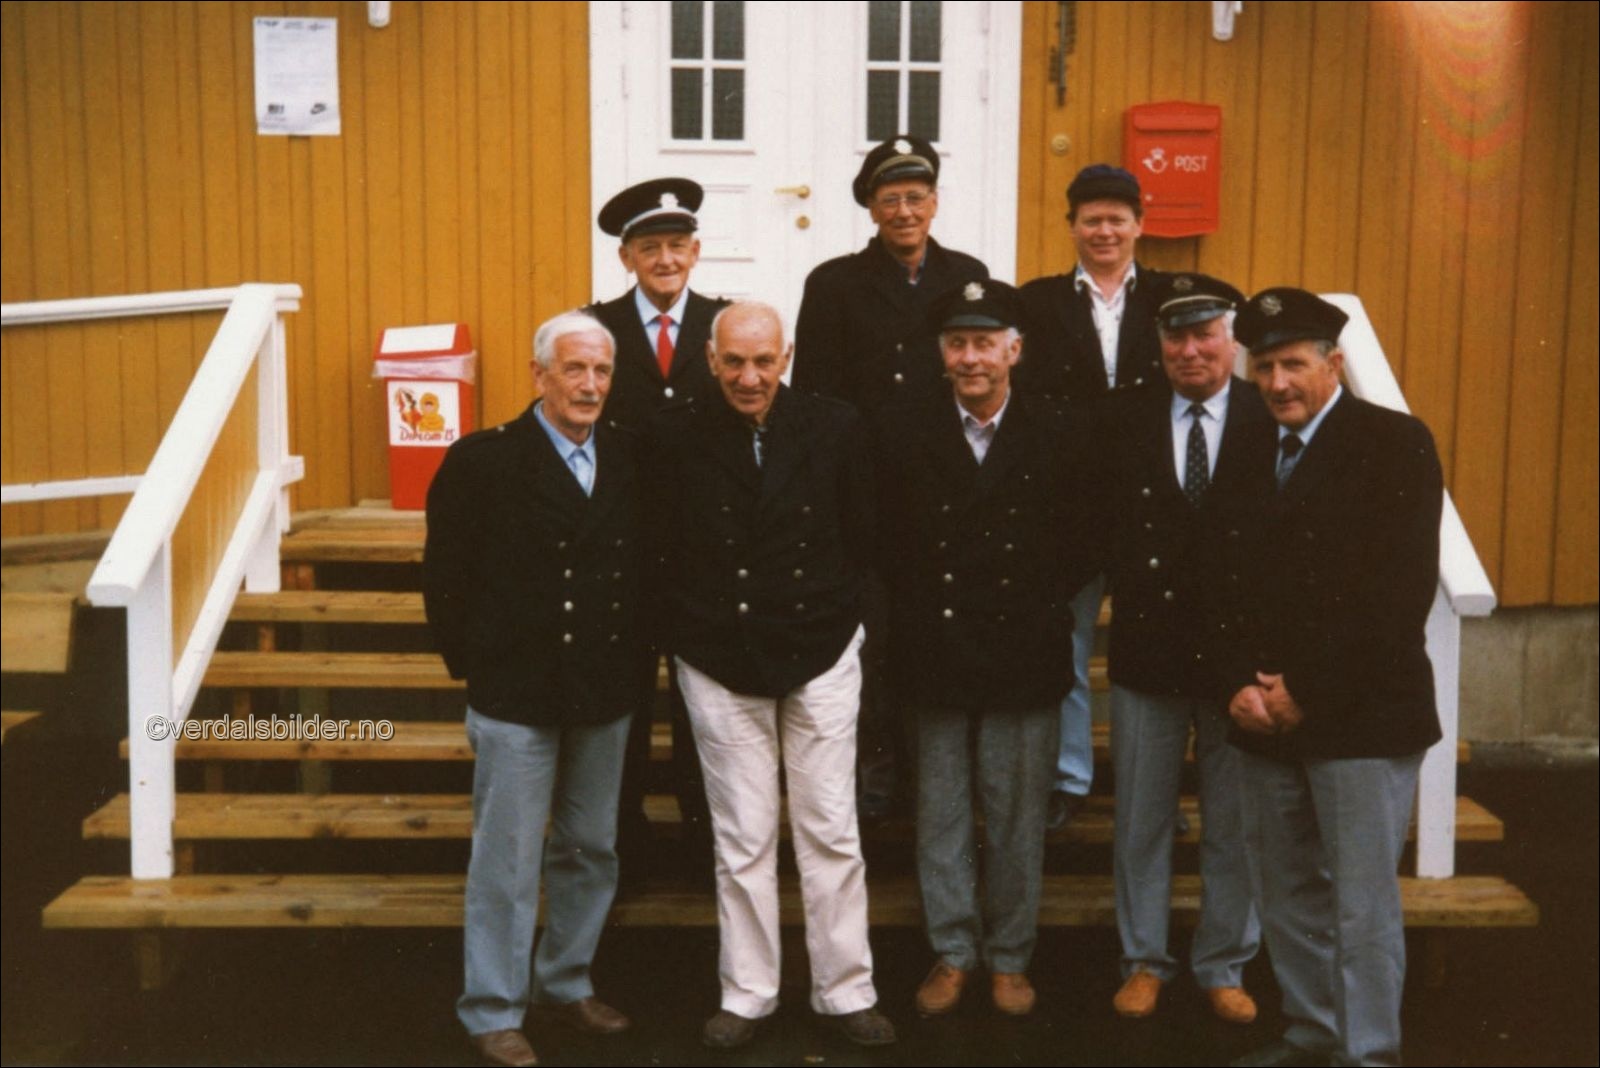 Deltakere med den gamle brannbilen på veteranbiltreff i Sandvika. Utlånt av Einar Storhaug.